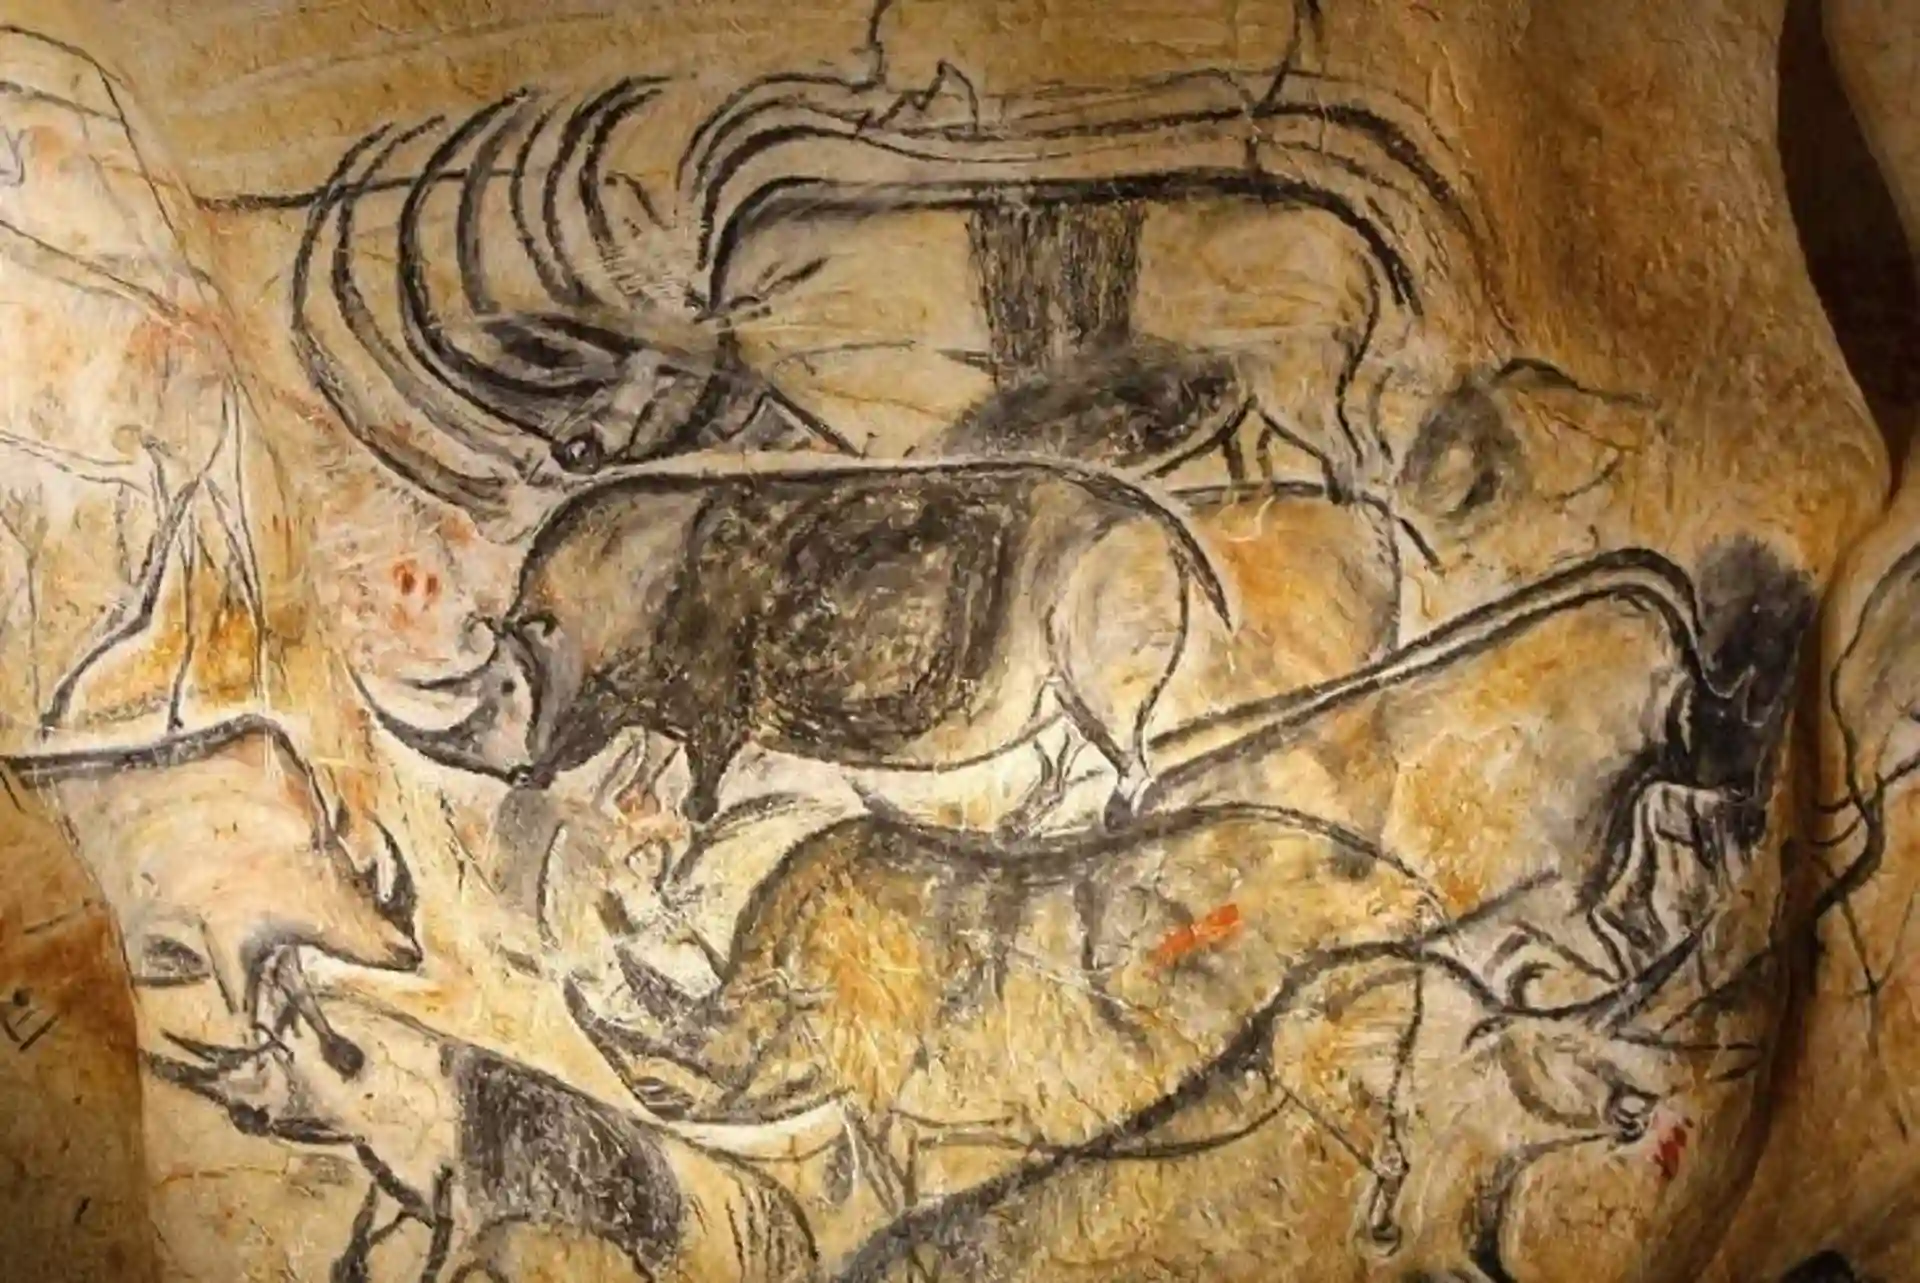 Animales representados en pintura rupestre. Desafío a los roles de género prehistóricos: mujeres cazadoras / Imagen: EP